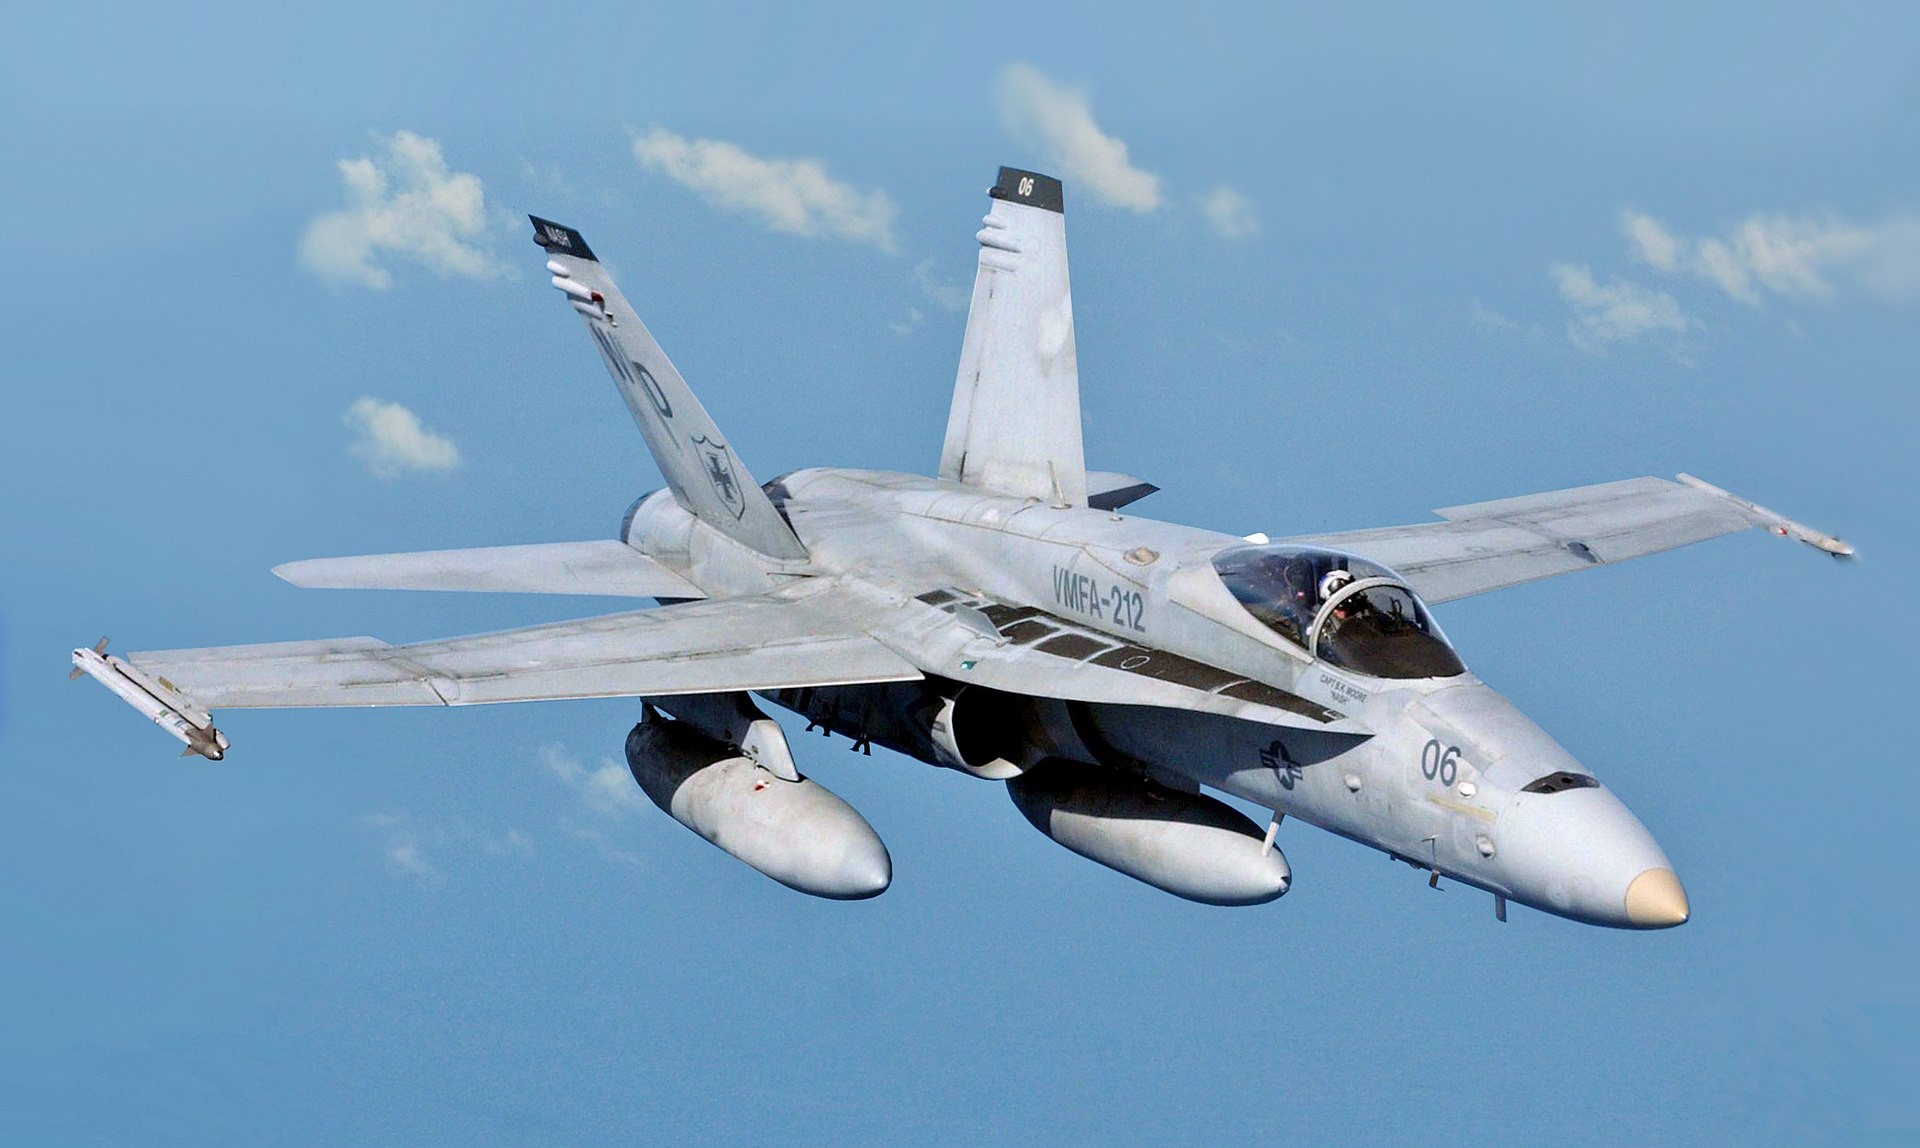 “Siêu ong bắp cày” F/A-18 của Mỹ rơi xuống biển ở Philippines